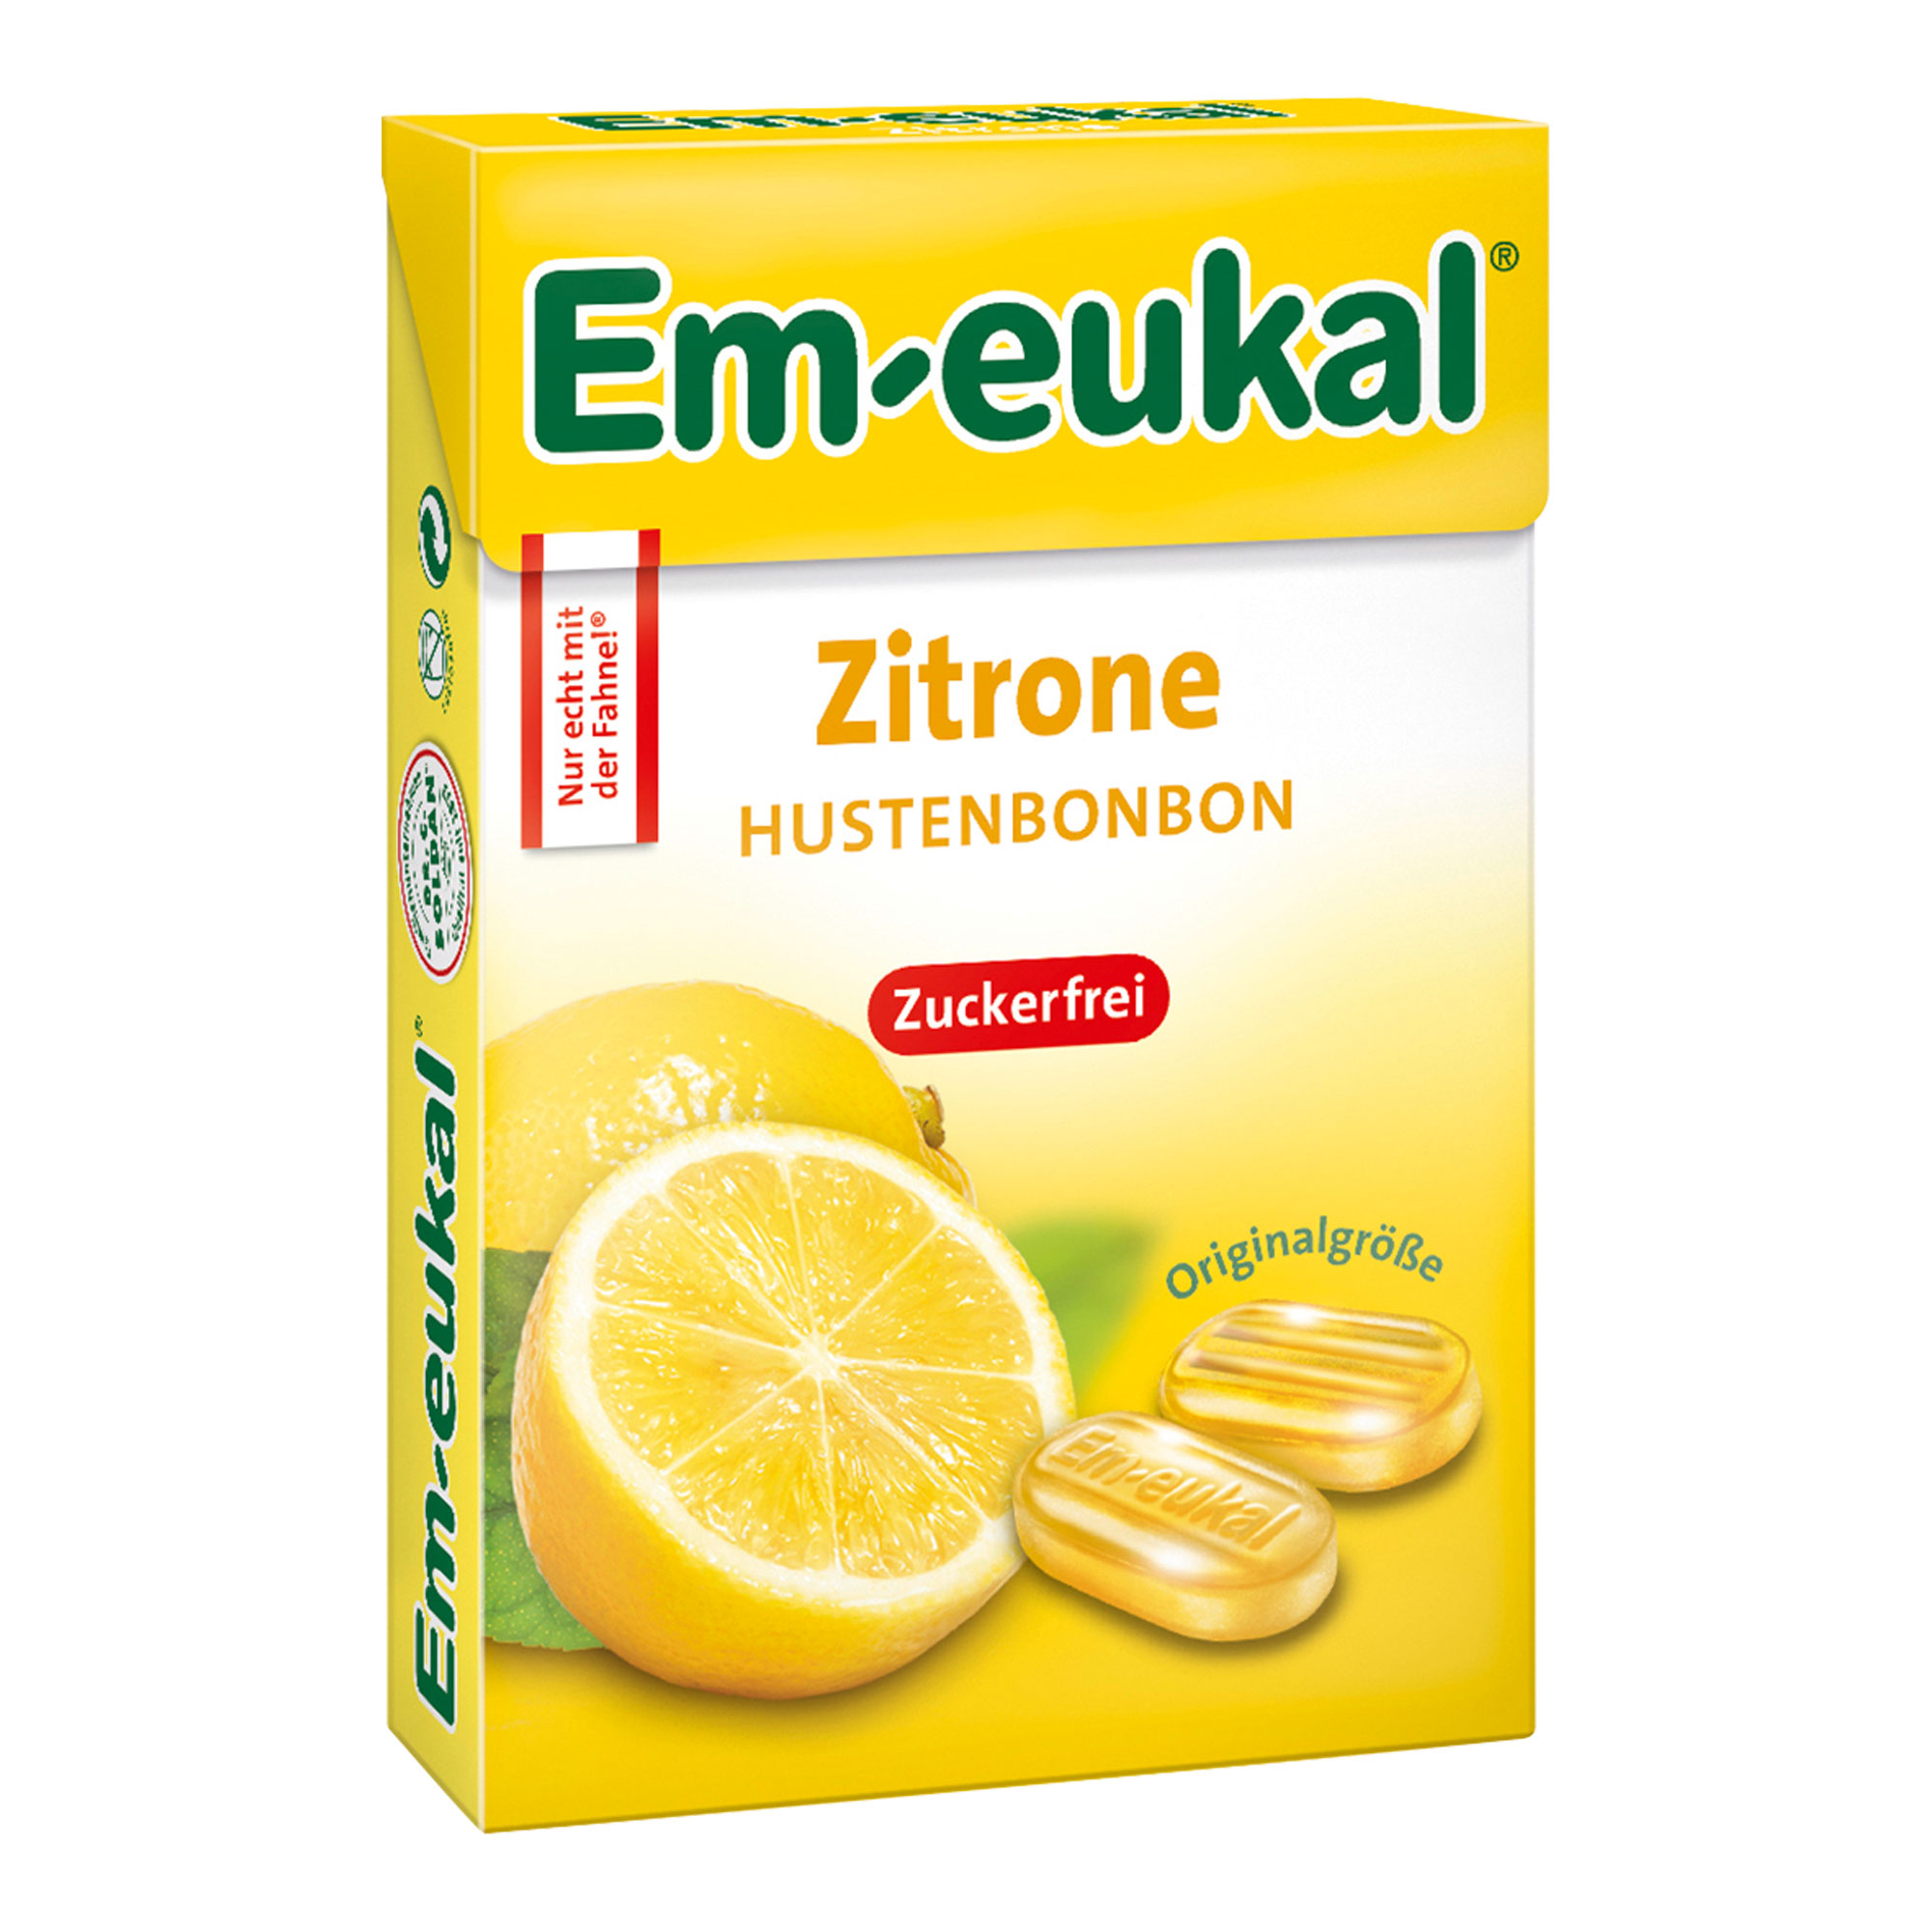 Zuckerfreie Zitronen-Hustenbonbons mit Vitamin C.